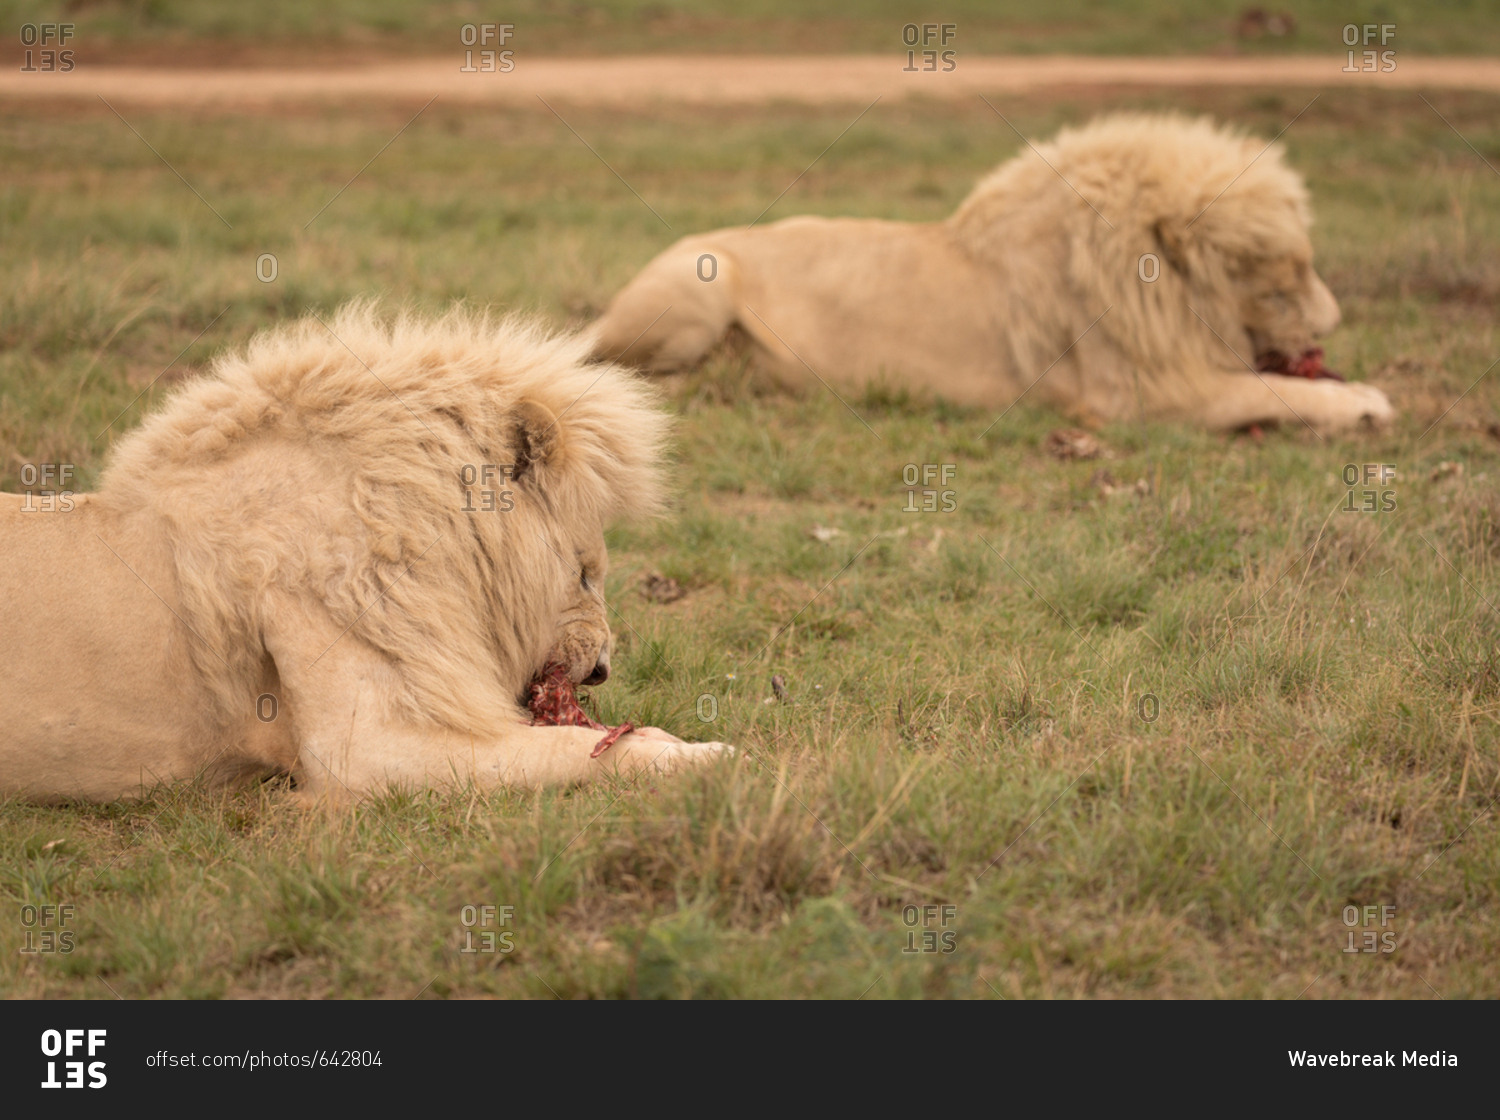 Lions eating meat at safari park